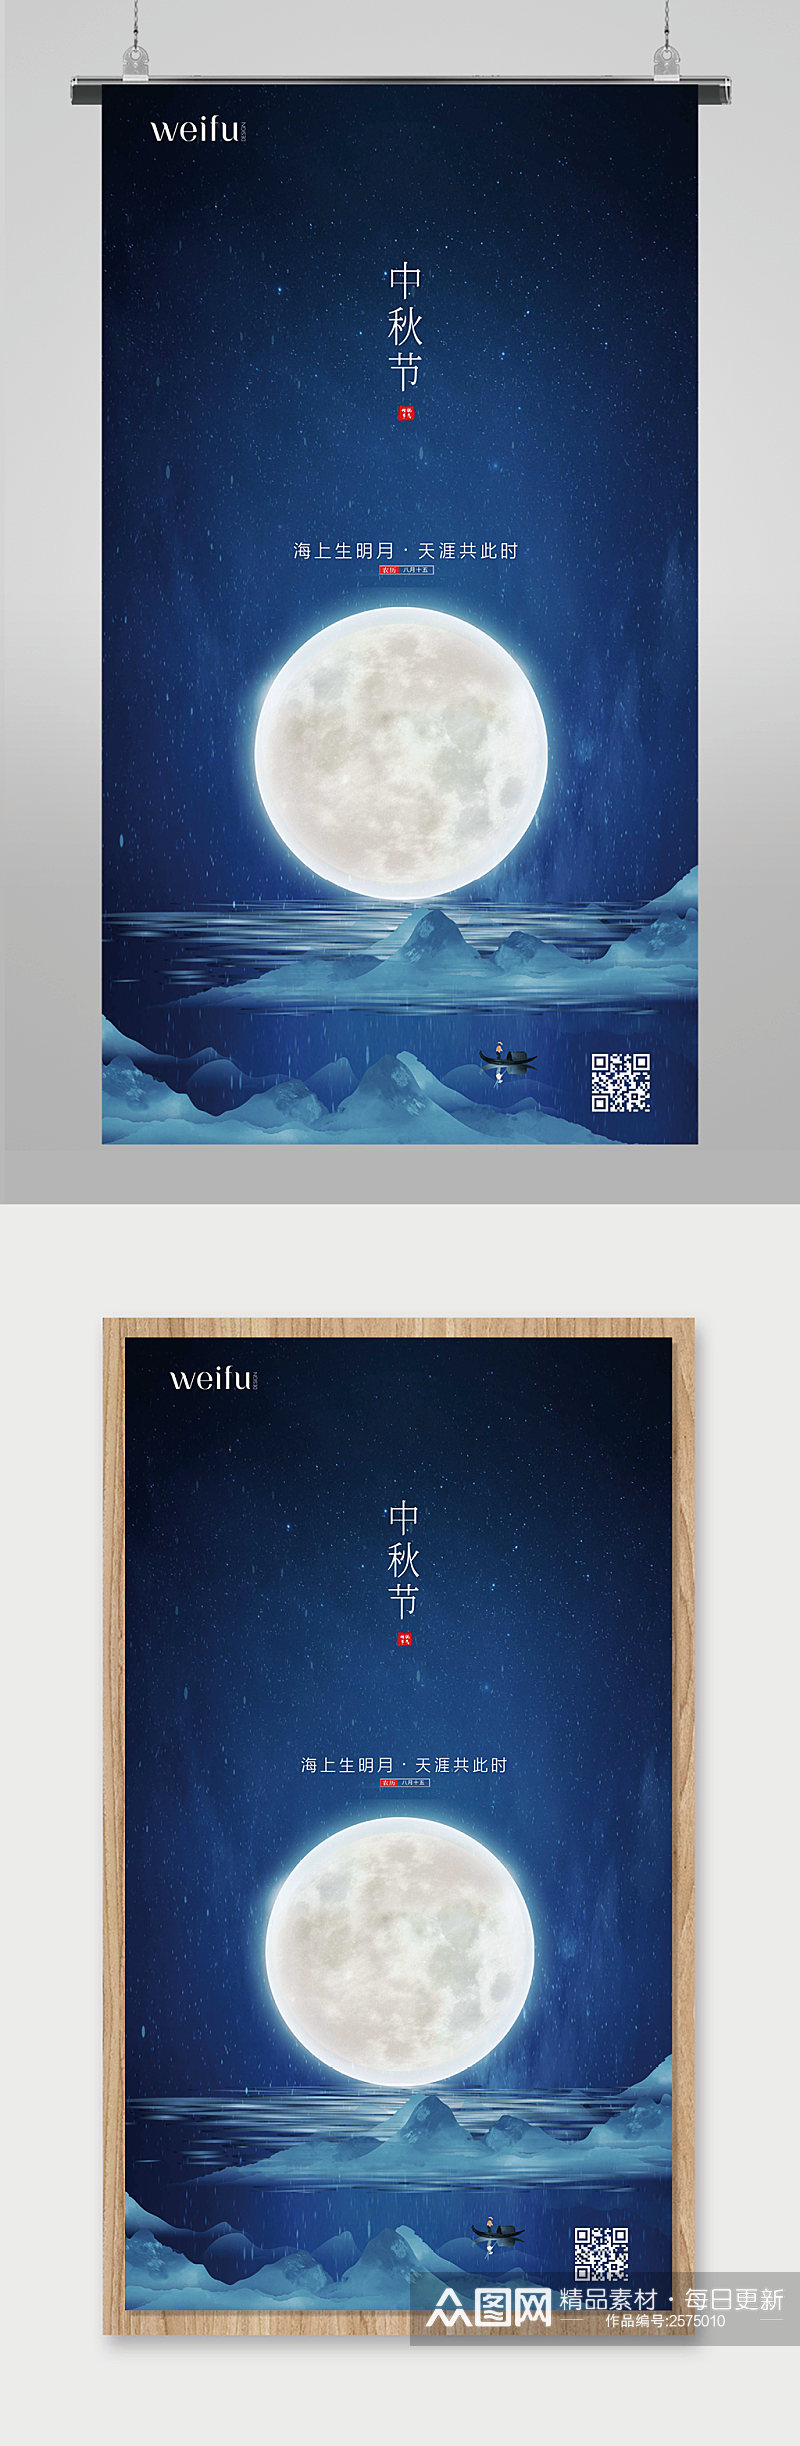 中国风传统节日中秋节节日宣传海报素材